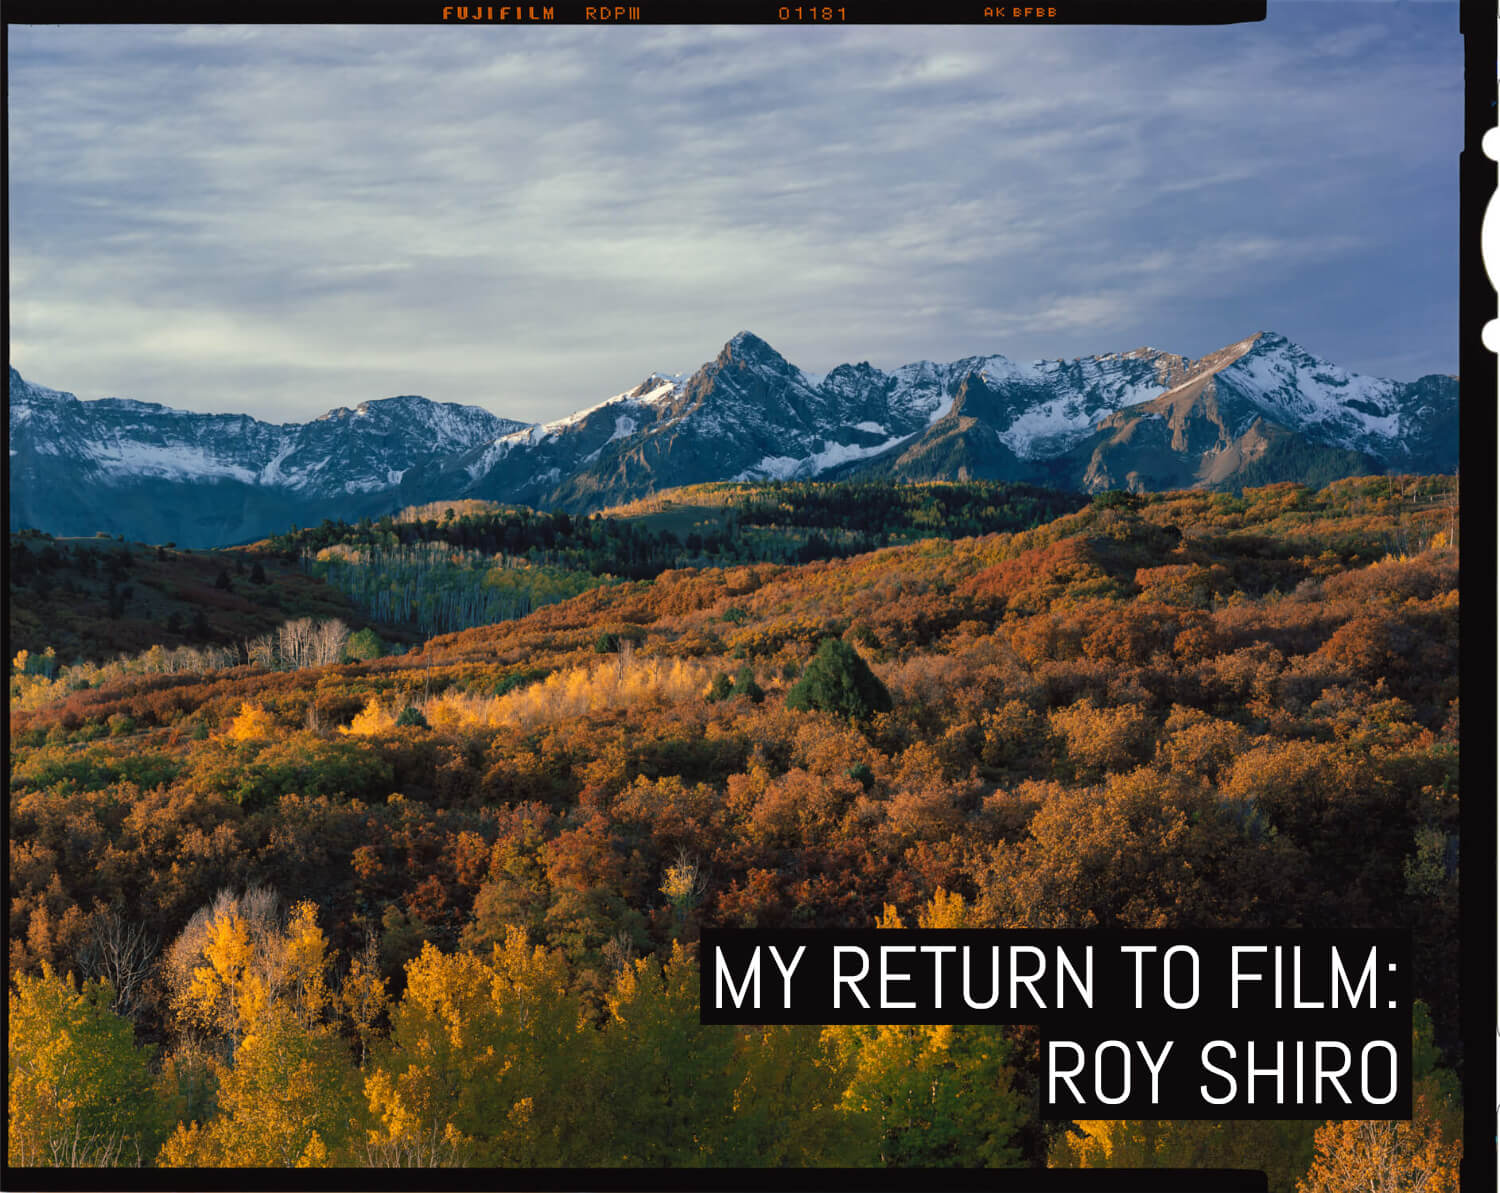 My return to film: Roy Shiro